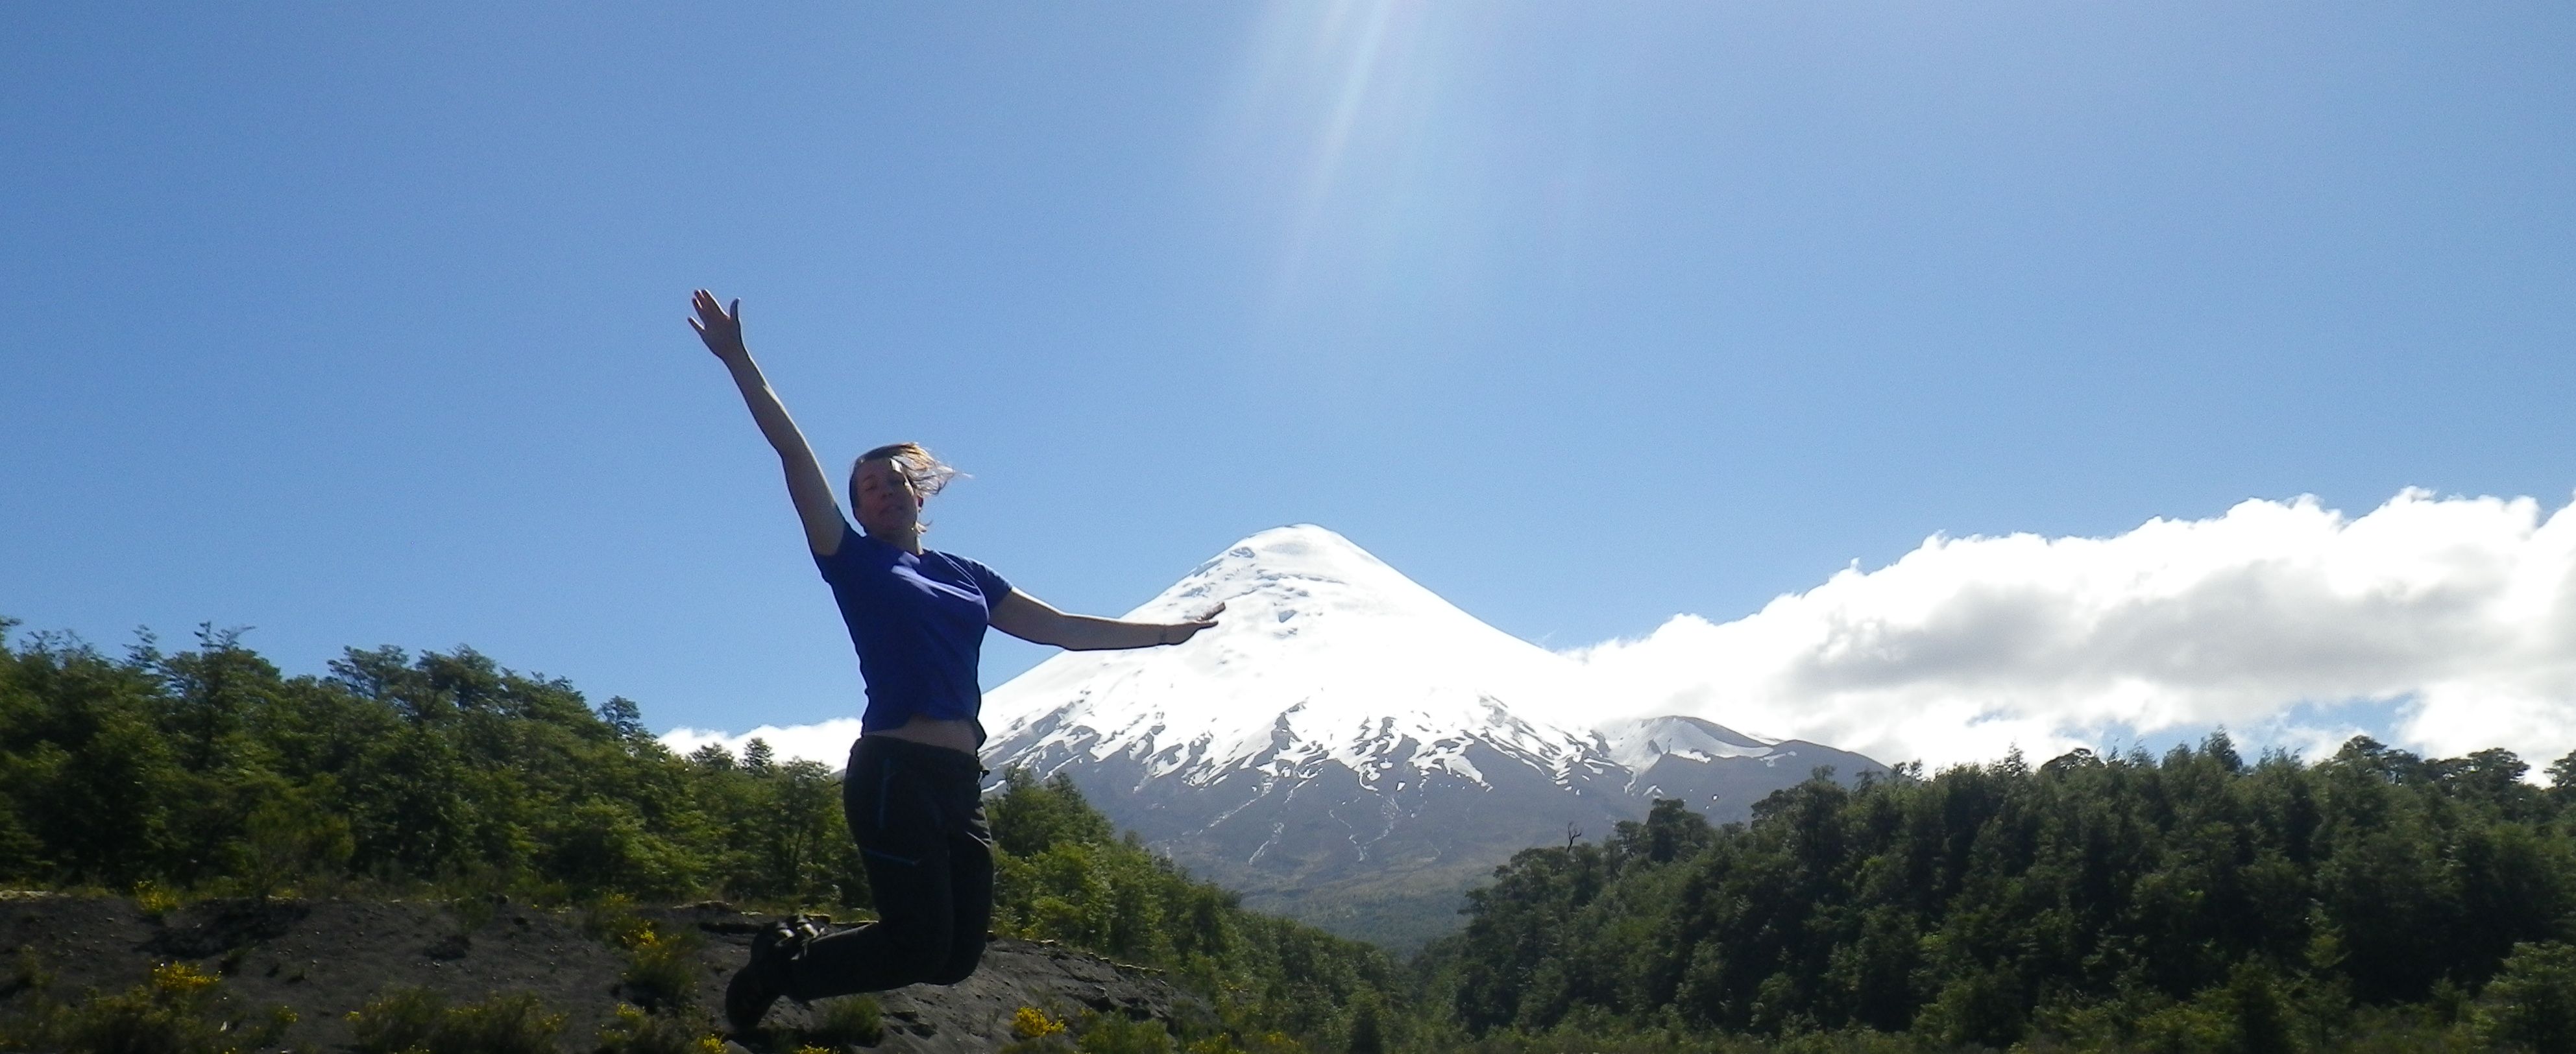 20121109- Volcan Osorno - Chile